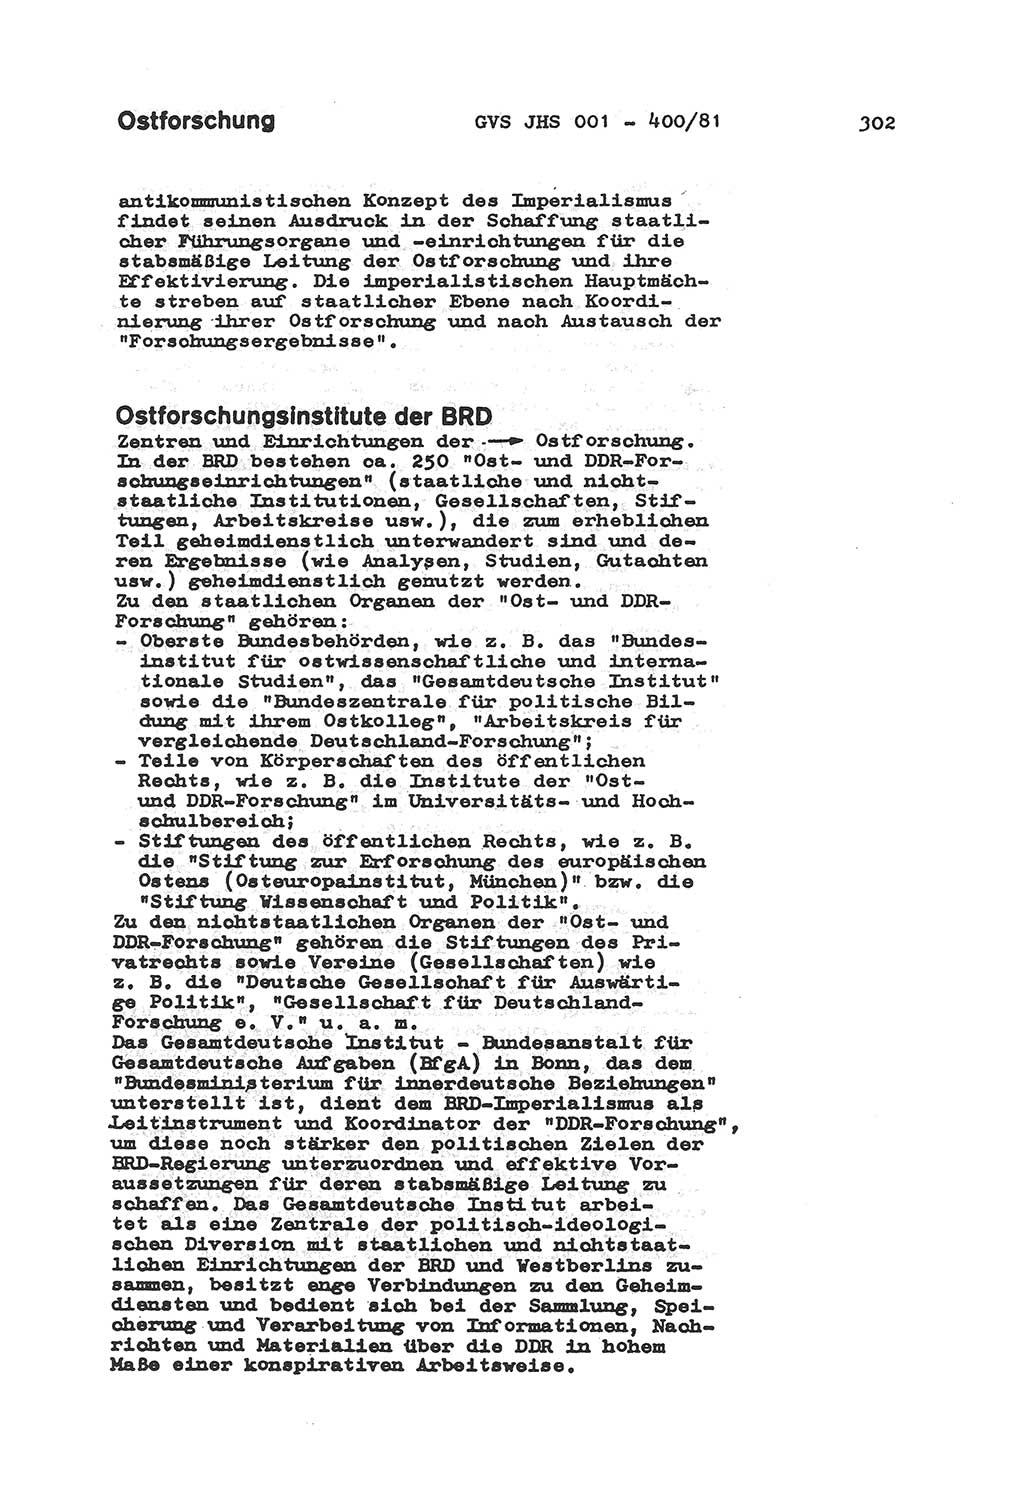 Wörterbuch der politisch-operativen Arbeit, Ministerium für Staatssicherheit (MfS) [Deutsche Demokratische Republik (DDR)], Juristische Hochschule (JHS), Geheime Verschlußsache (GVS) o001-400/81, Potsdam 1985, Blatt 302 (Wb. pol.-op. Arb. MfS DDR JHS GVS o001-400/81 1985, Bl. 302)